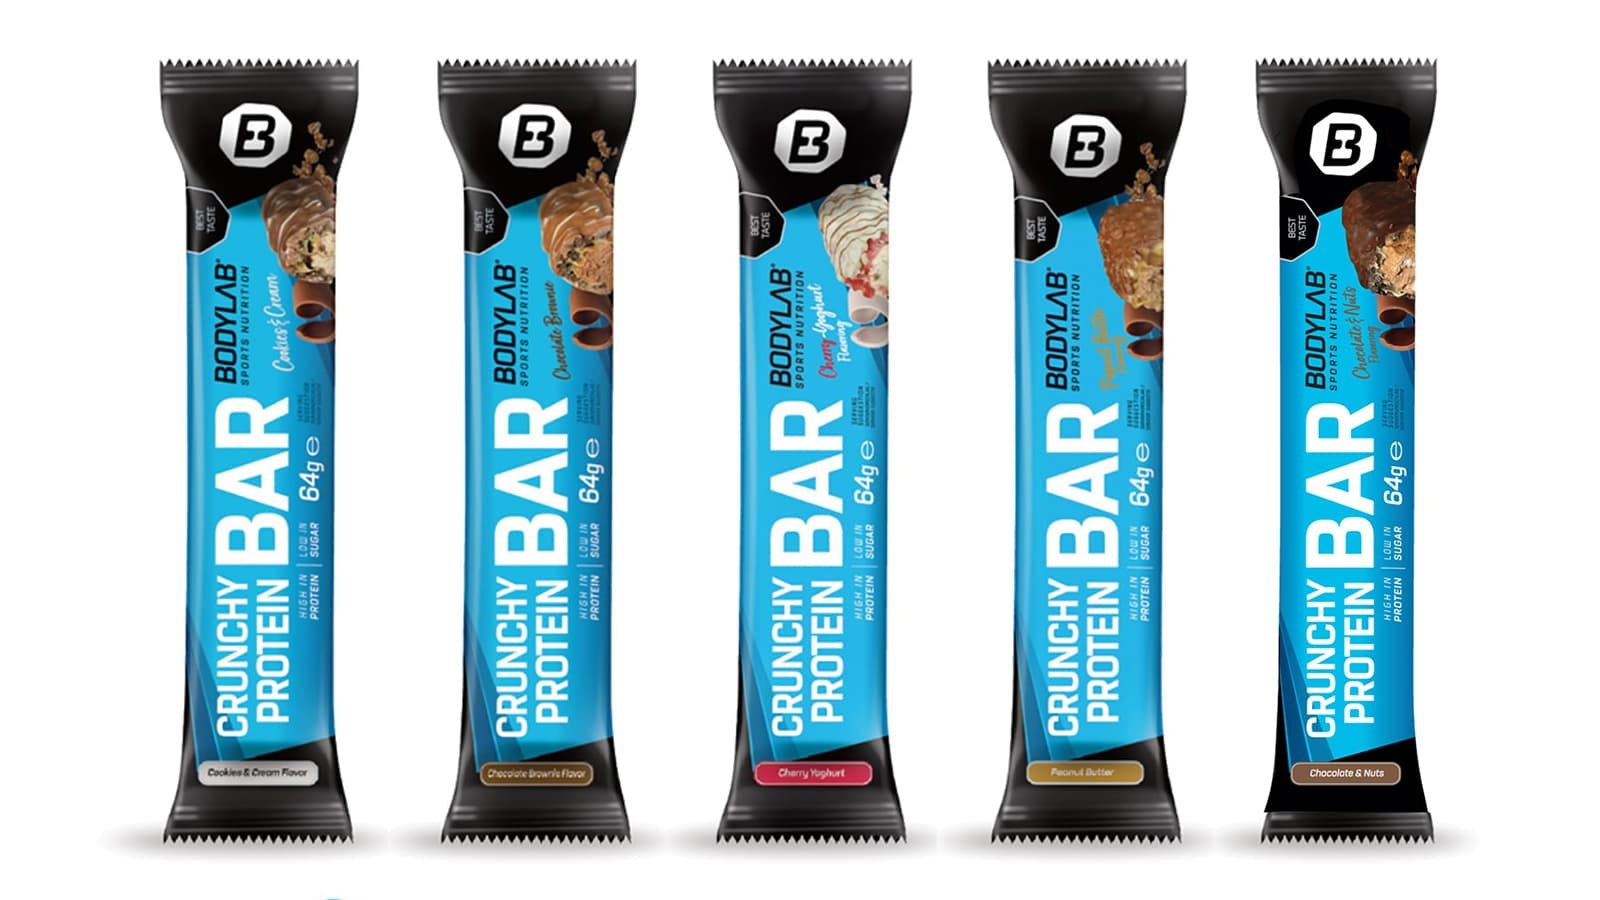 BodyLab24 Crunchy Protein Bar im Review. Bild, welches die verschiedenen Geschmacksrichtungen der BodyLab24 Crunchy Protein Bar zeigt.